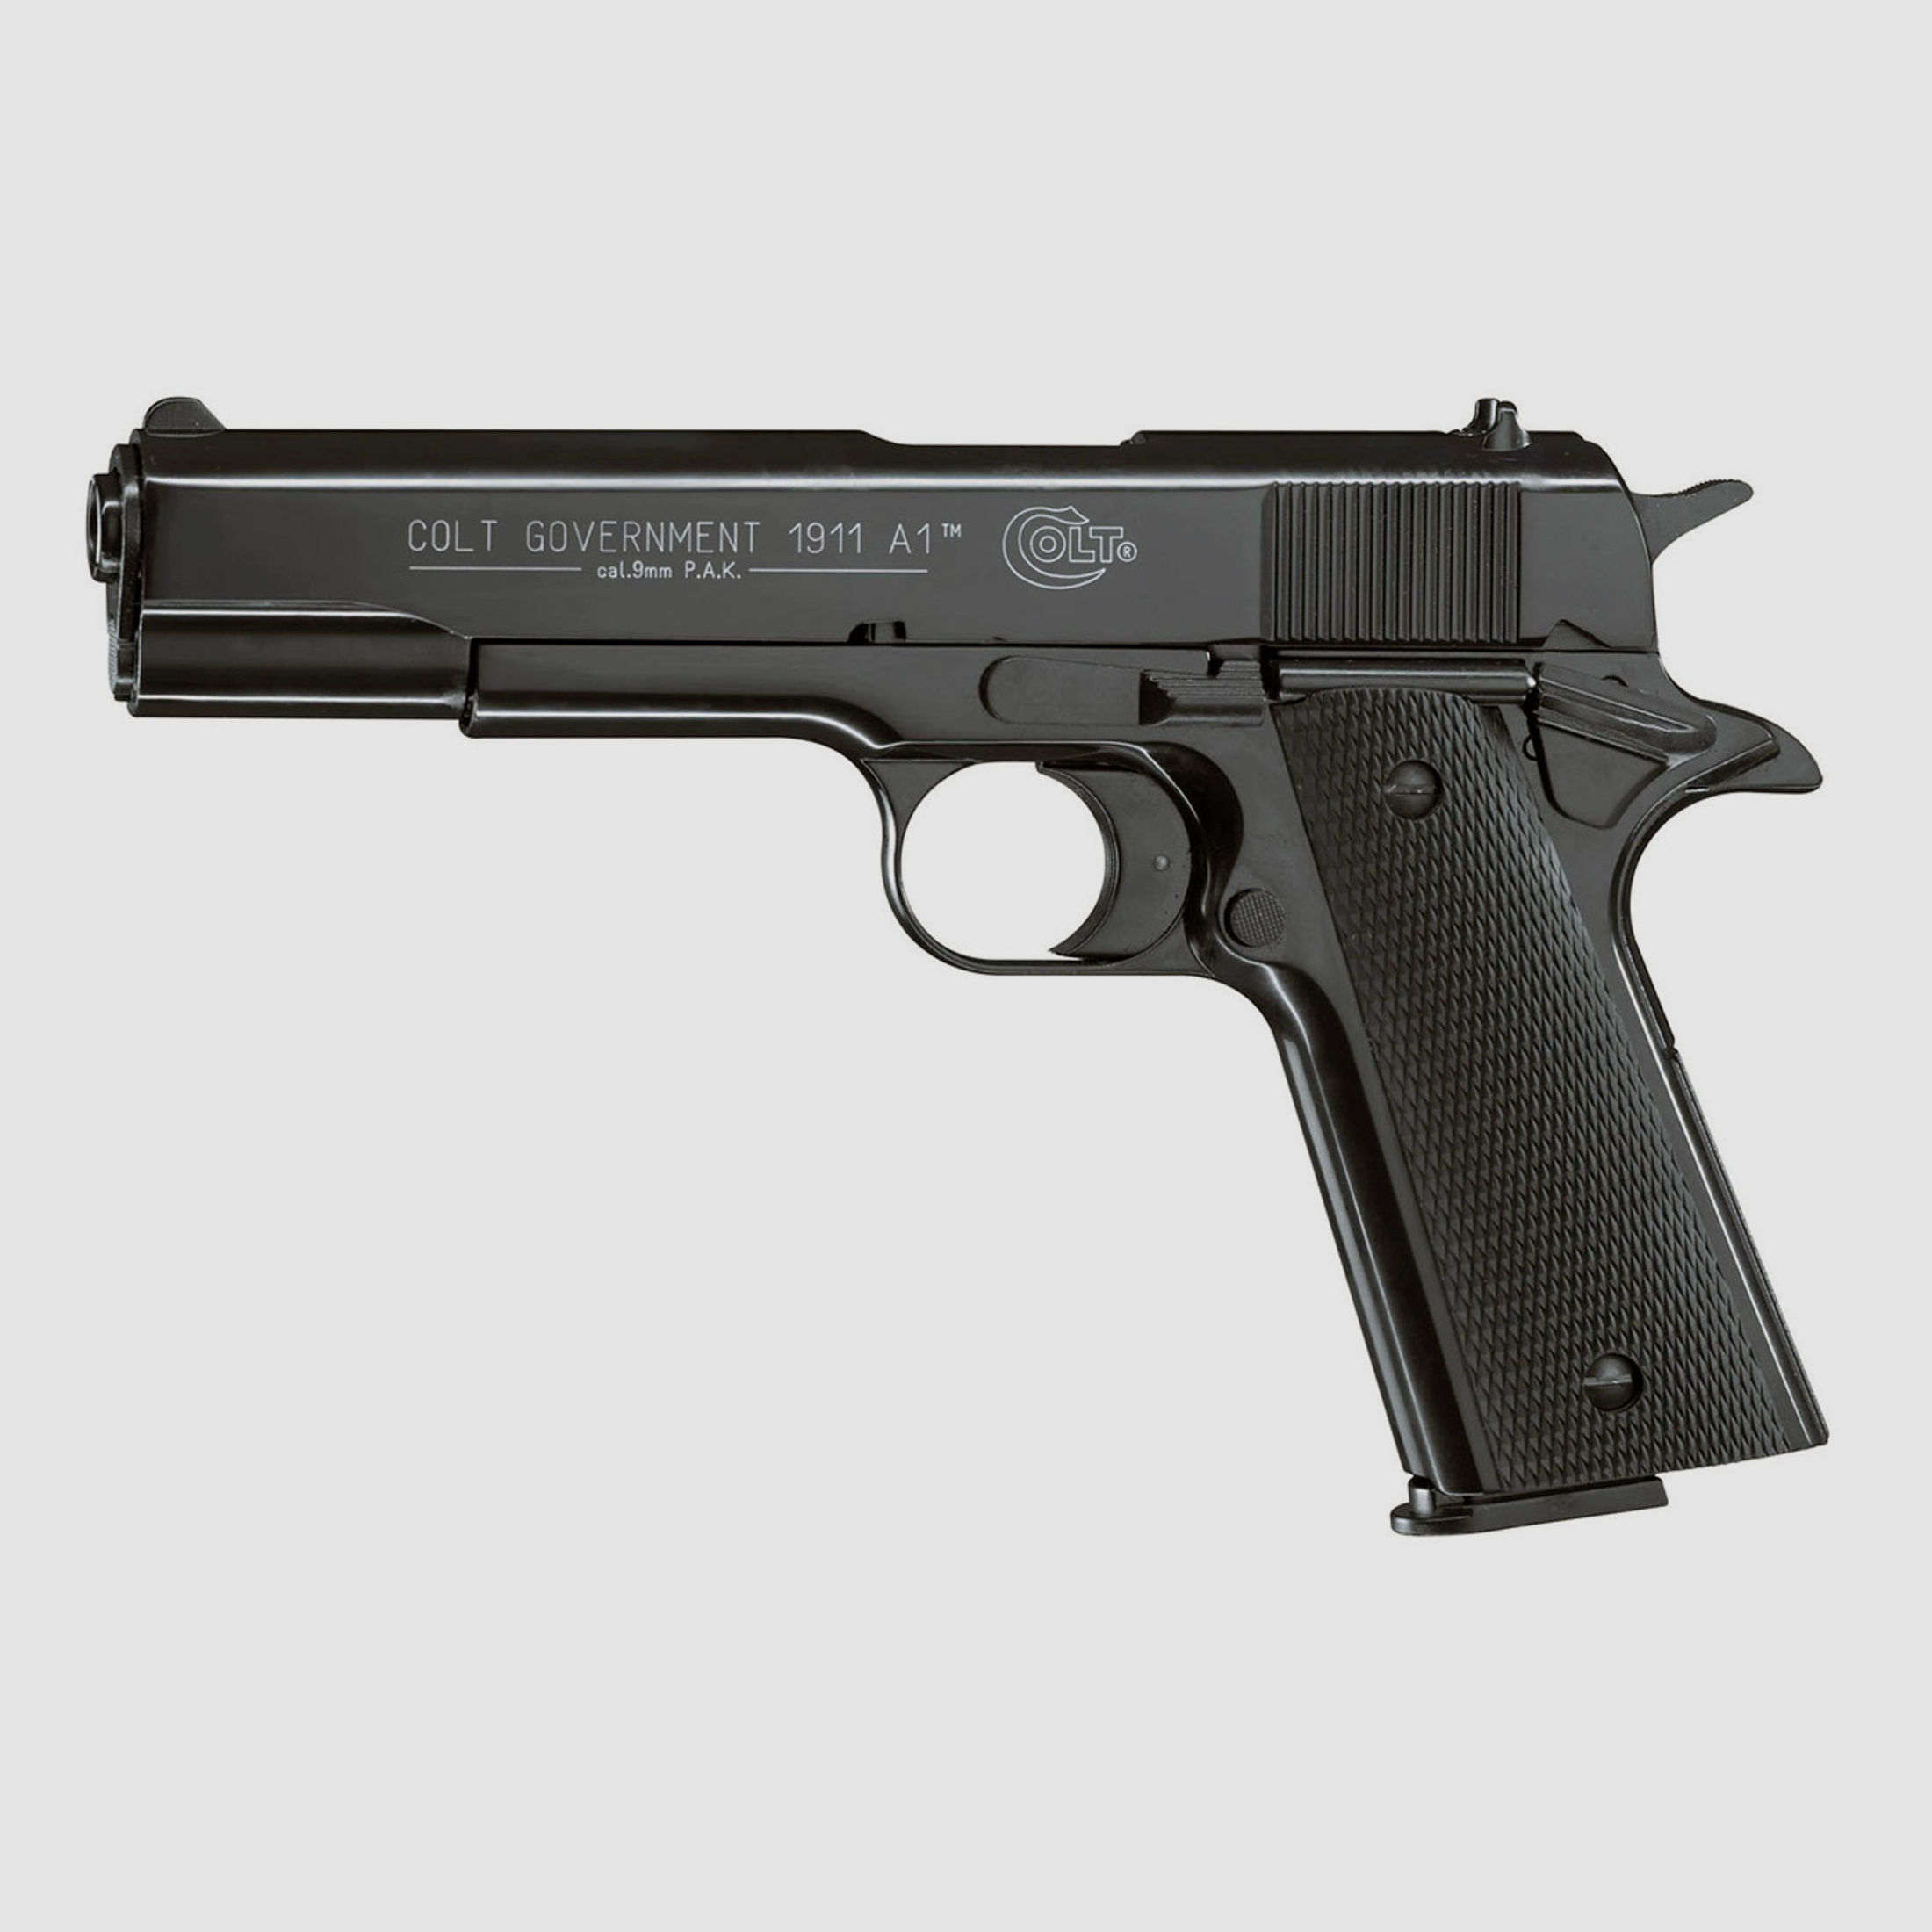 Schreckschuss Pistole Colt Government 1911 A1 schwarz Kaliber 9 mm P.A.K. (P18)